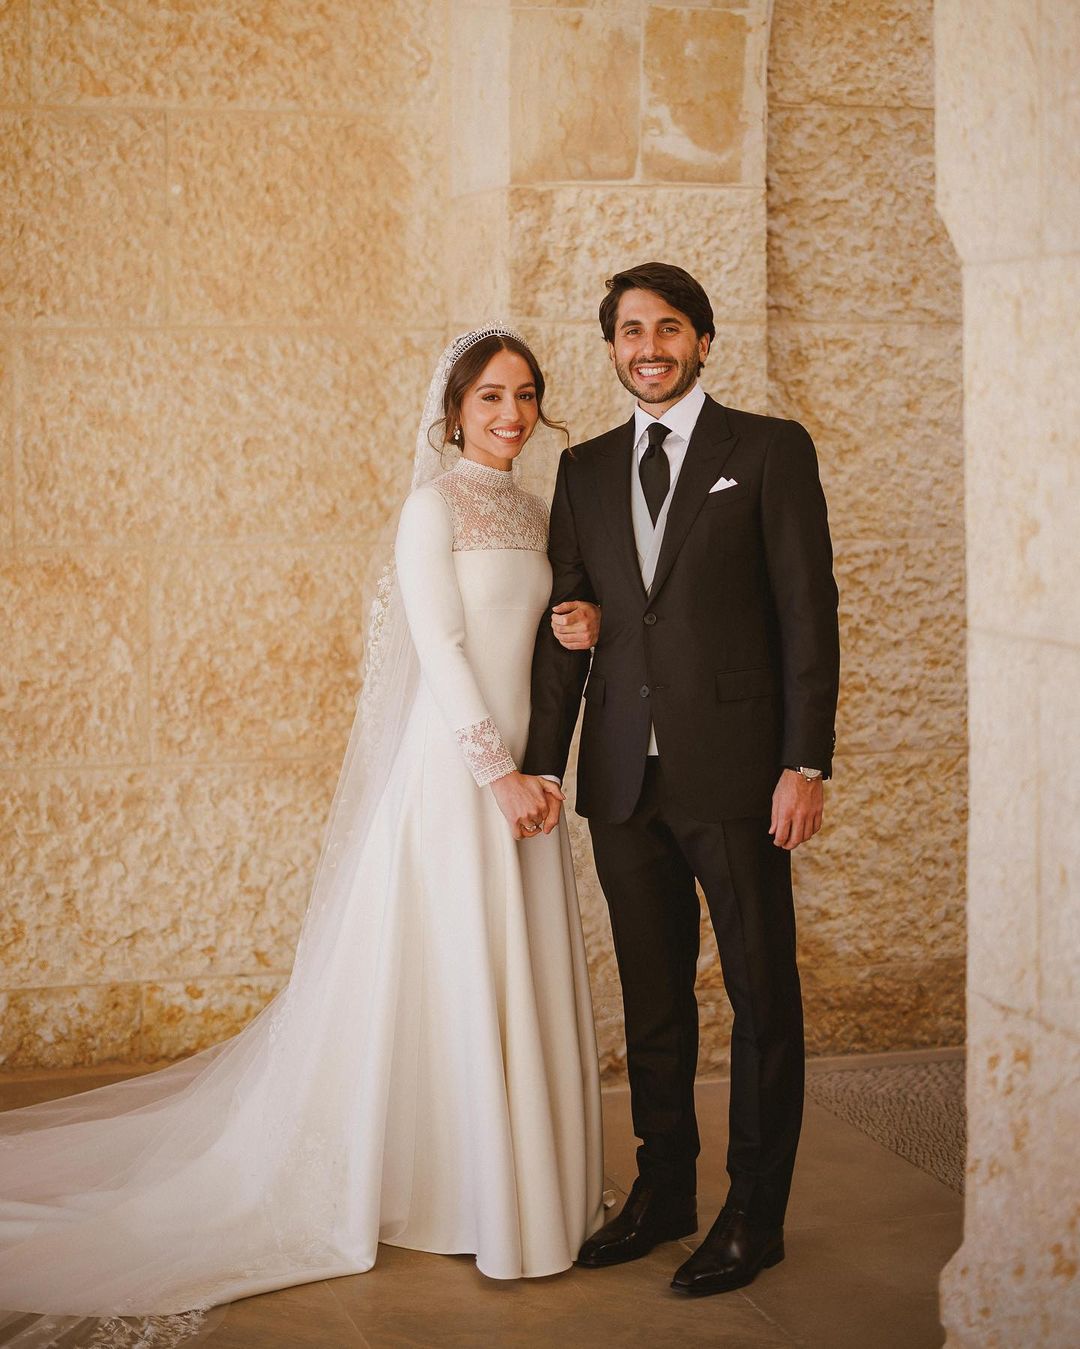 Принцесса Иордании вышла замуж. Детали одной из богатейших свадеб внутри